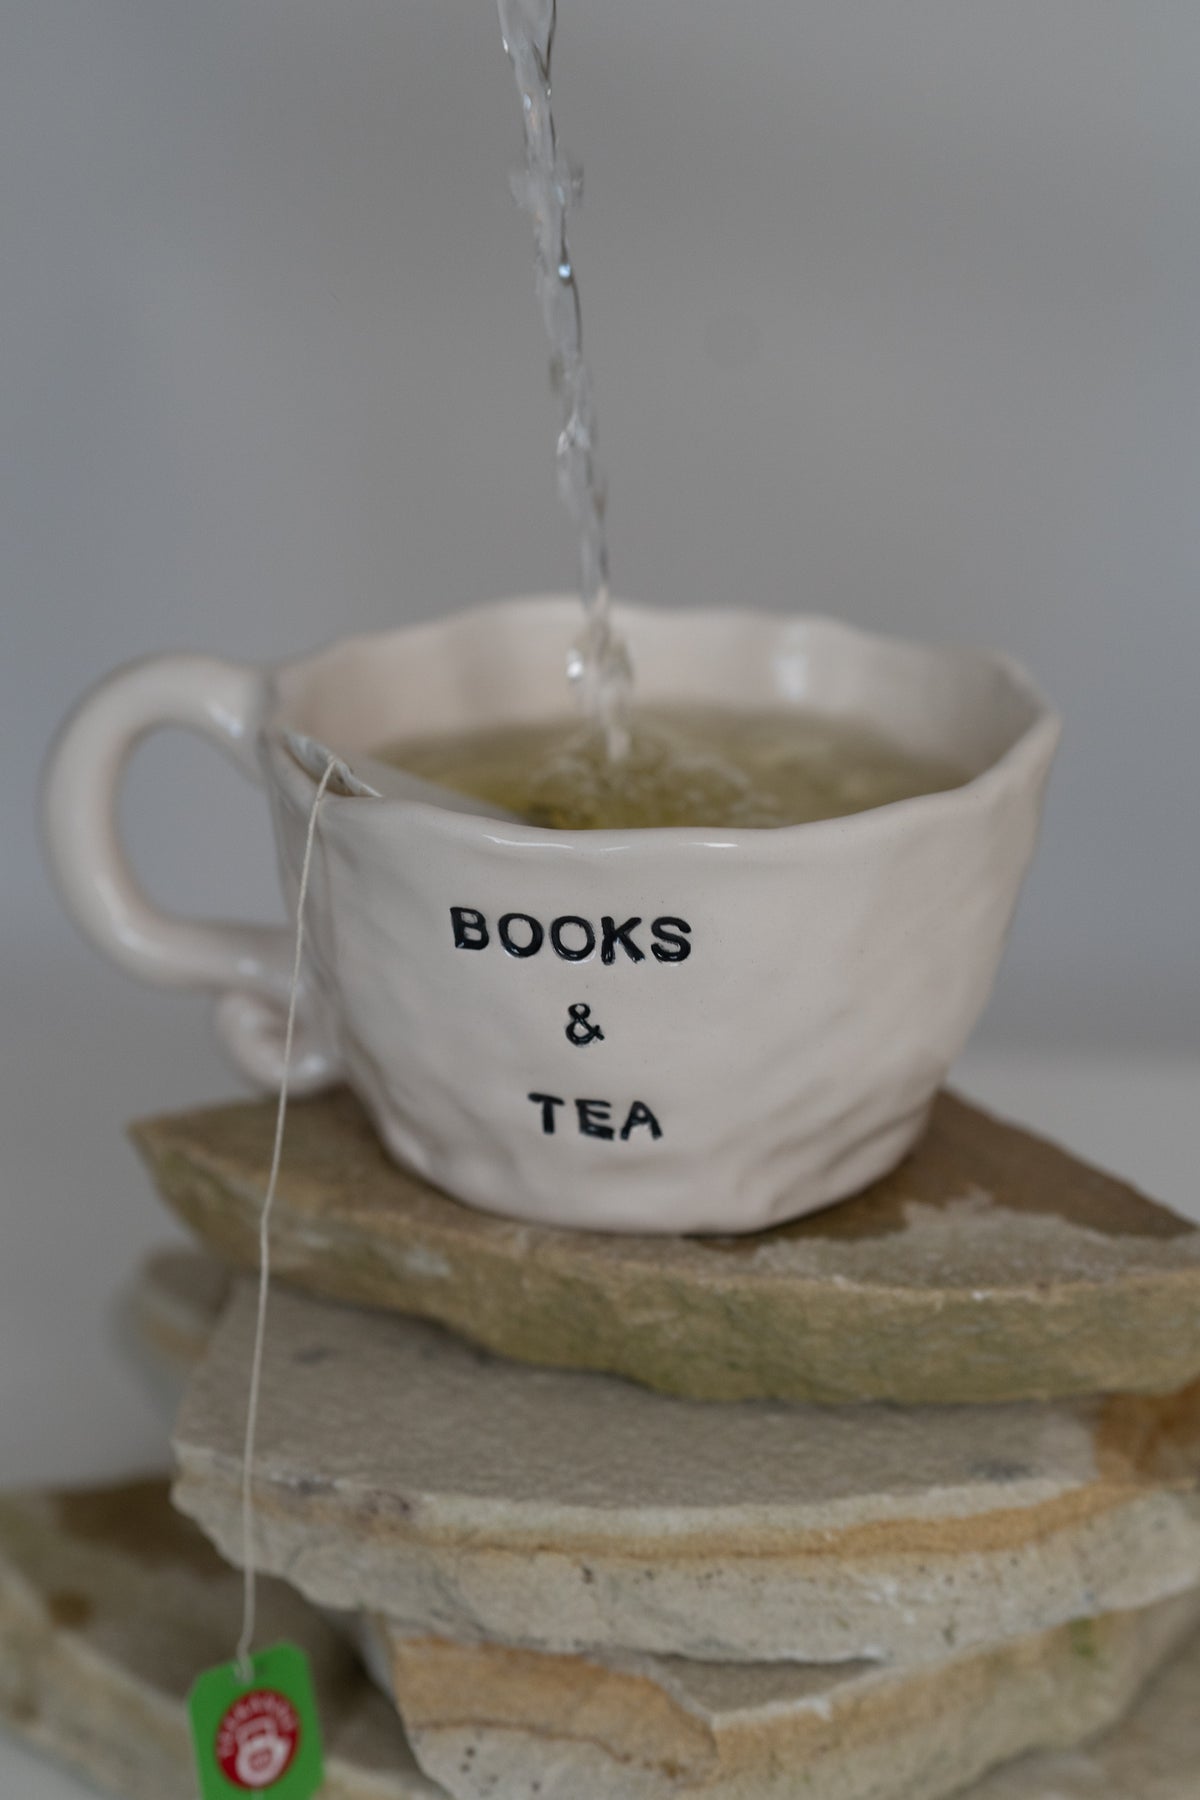 Books & Tea Cup